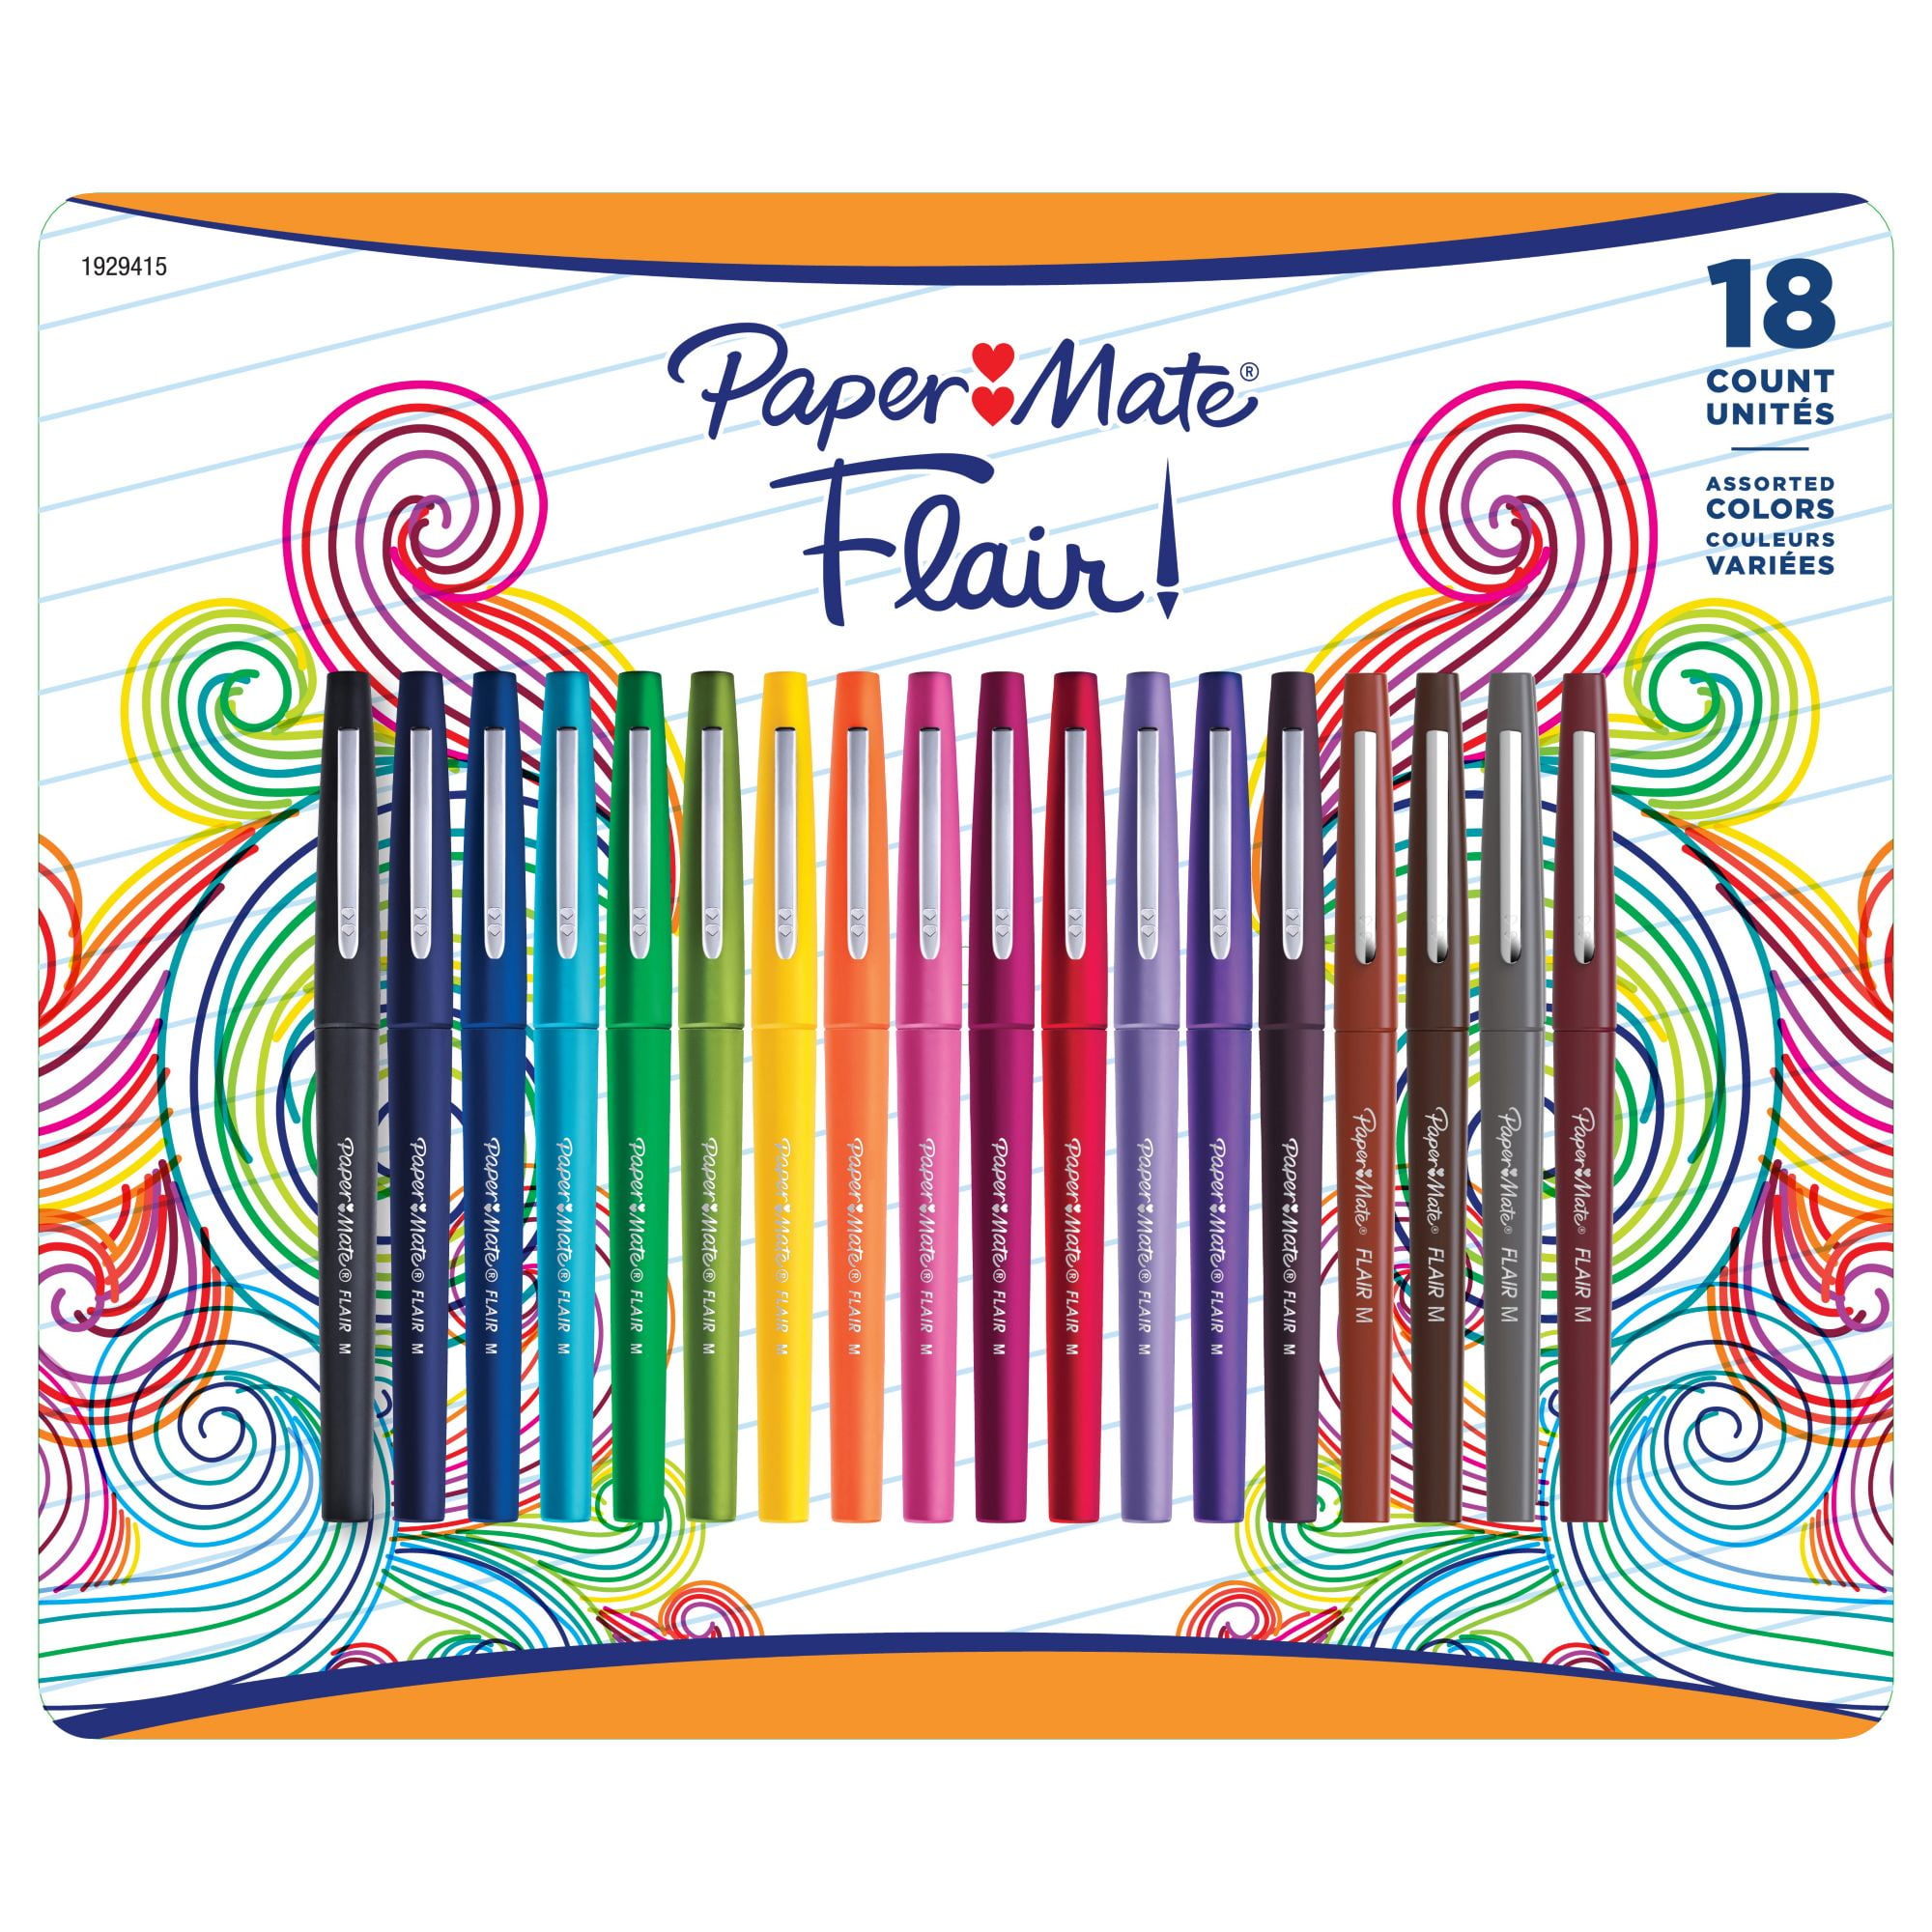 analyseren verantwoordelijkheid Expliciet Paper Mate Flair Pen, 18 ct. - Assorted Colors - Walmart.com